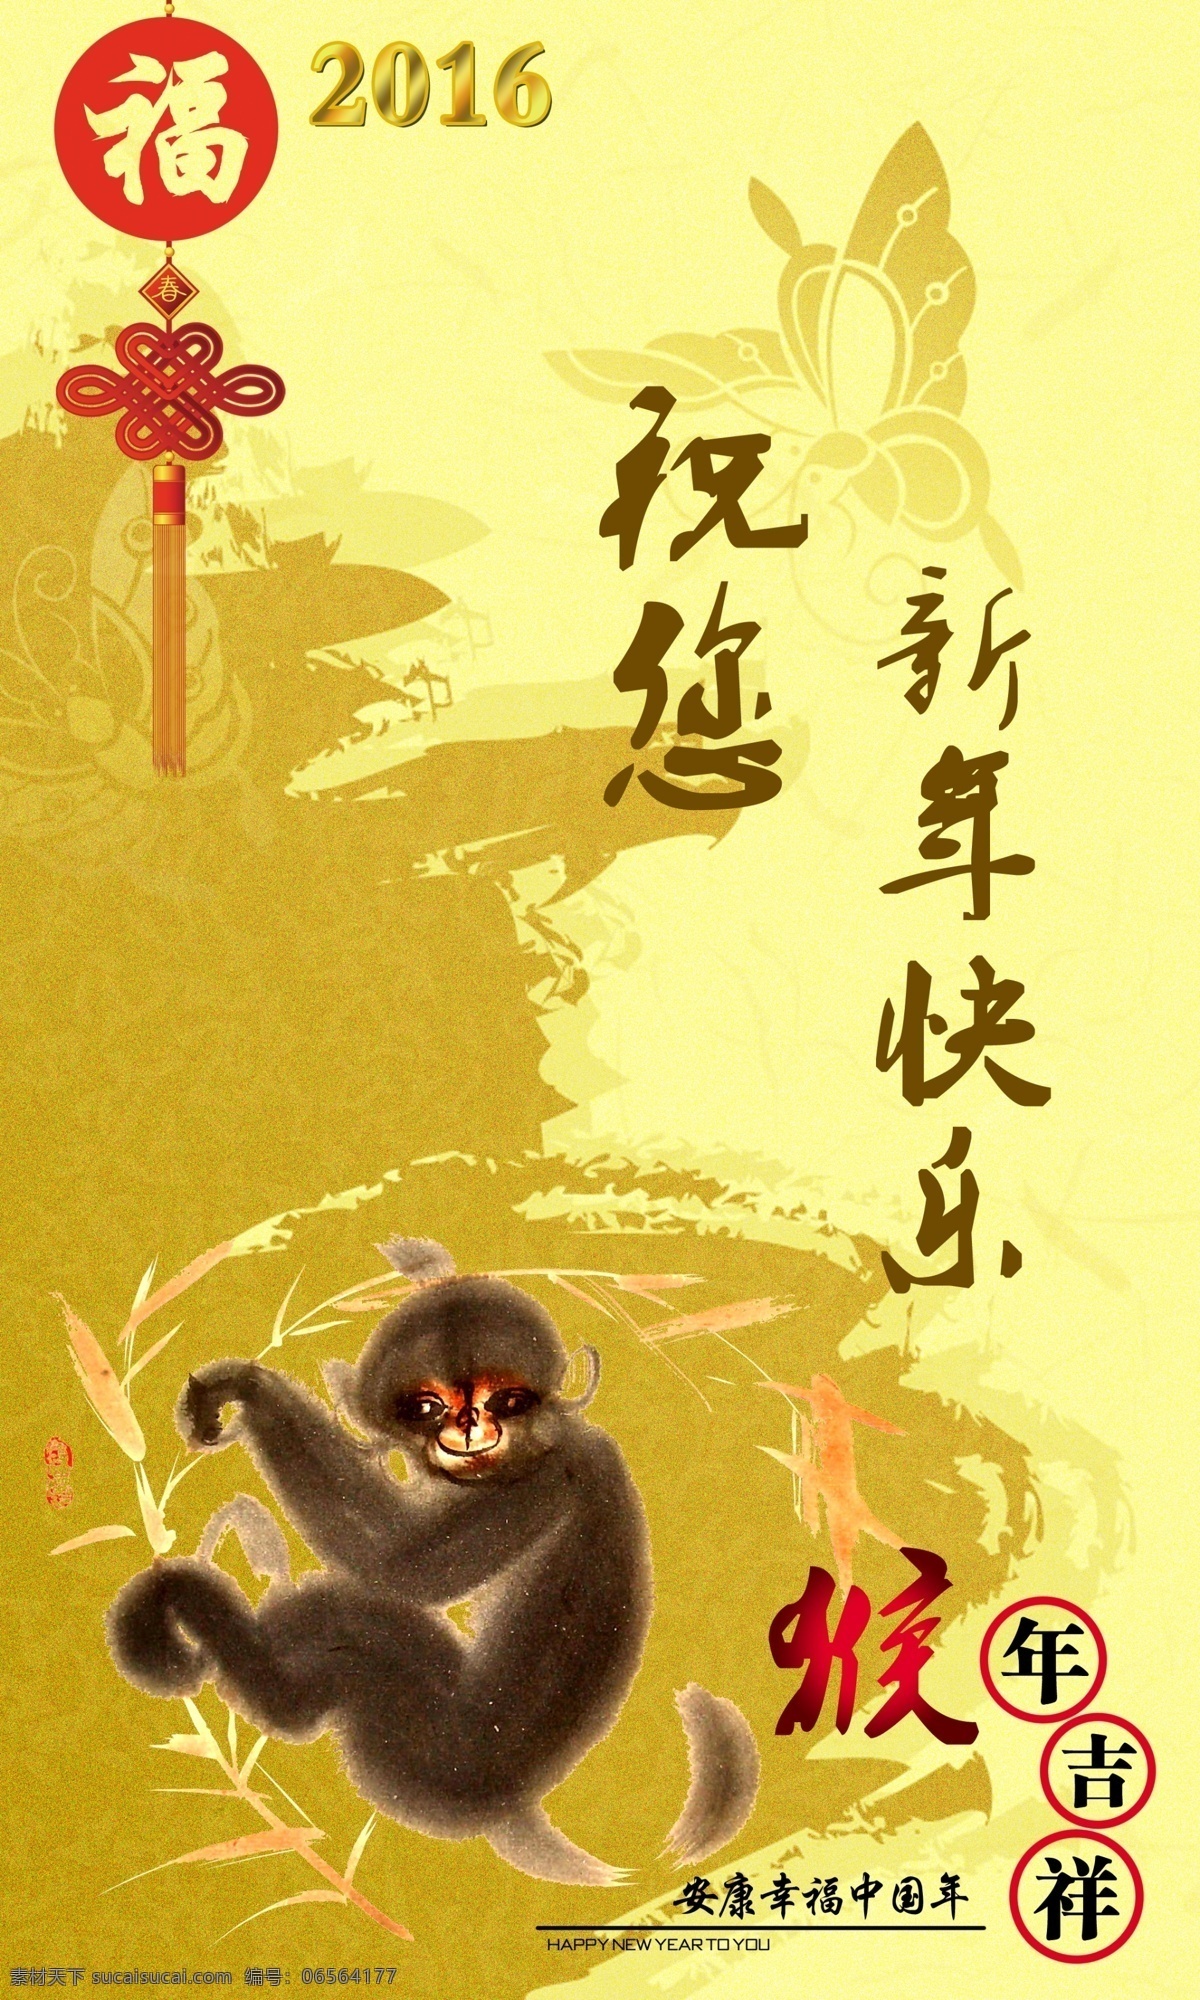 猴年贺卡 2016 猴年吉祥 健康幸福 中国年 生活百科 黄色